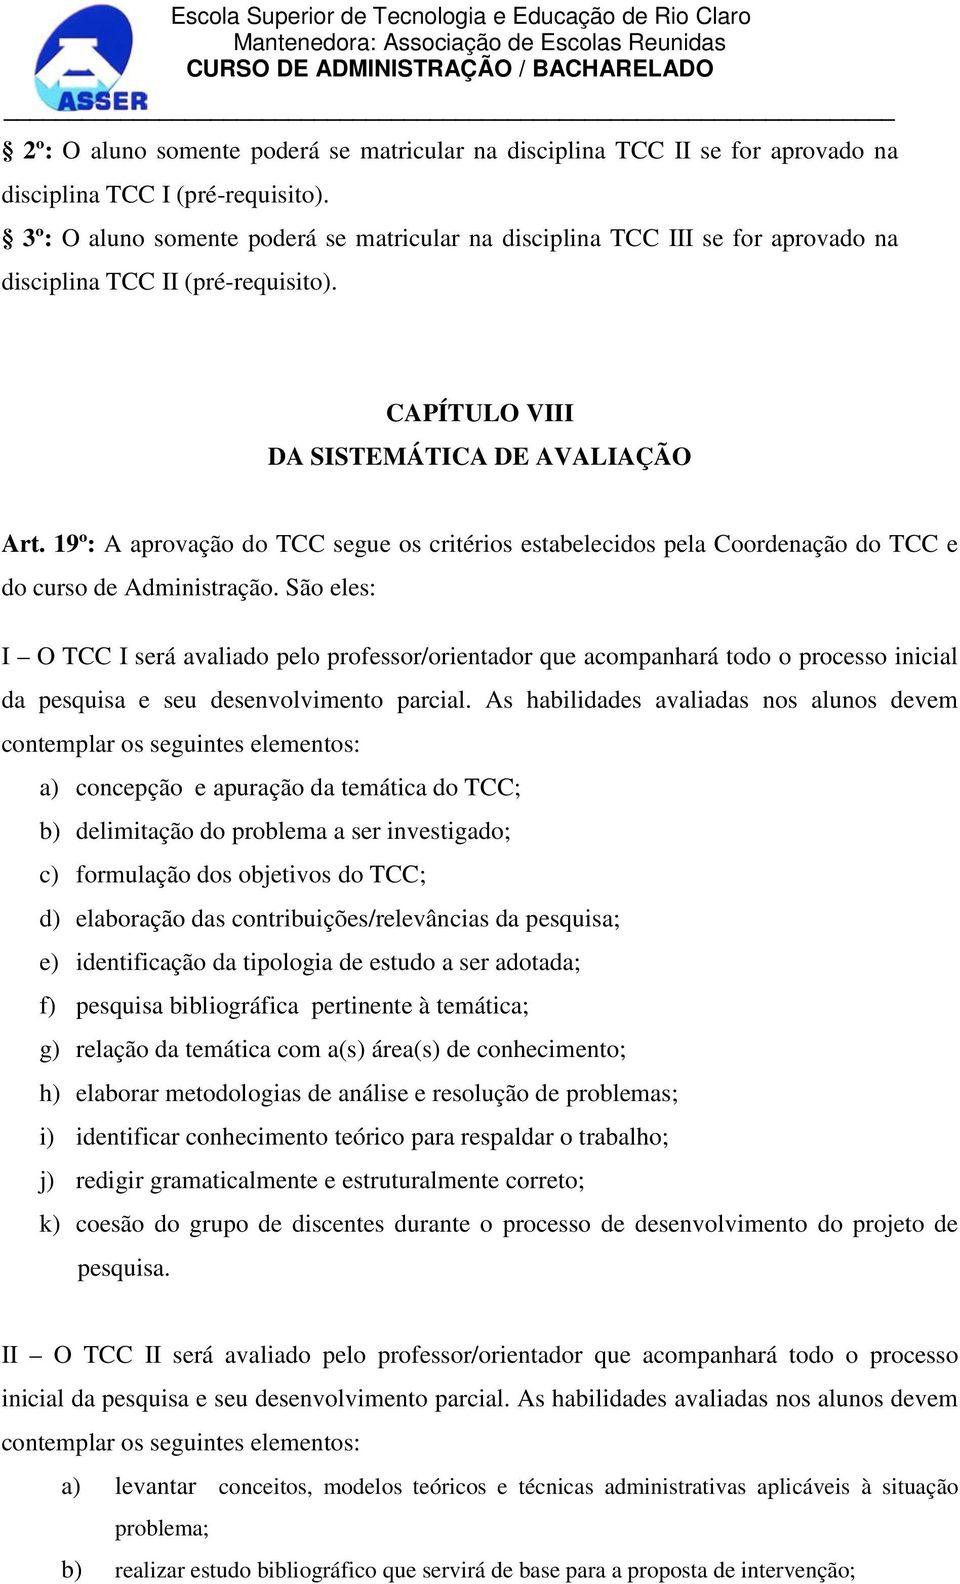 19º: A aprovação do TCC segue os critérios estabelecidos pela Coordenação do TCC e do curso de Administração.